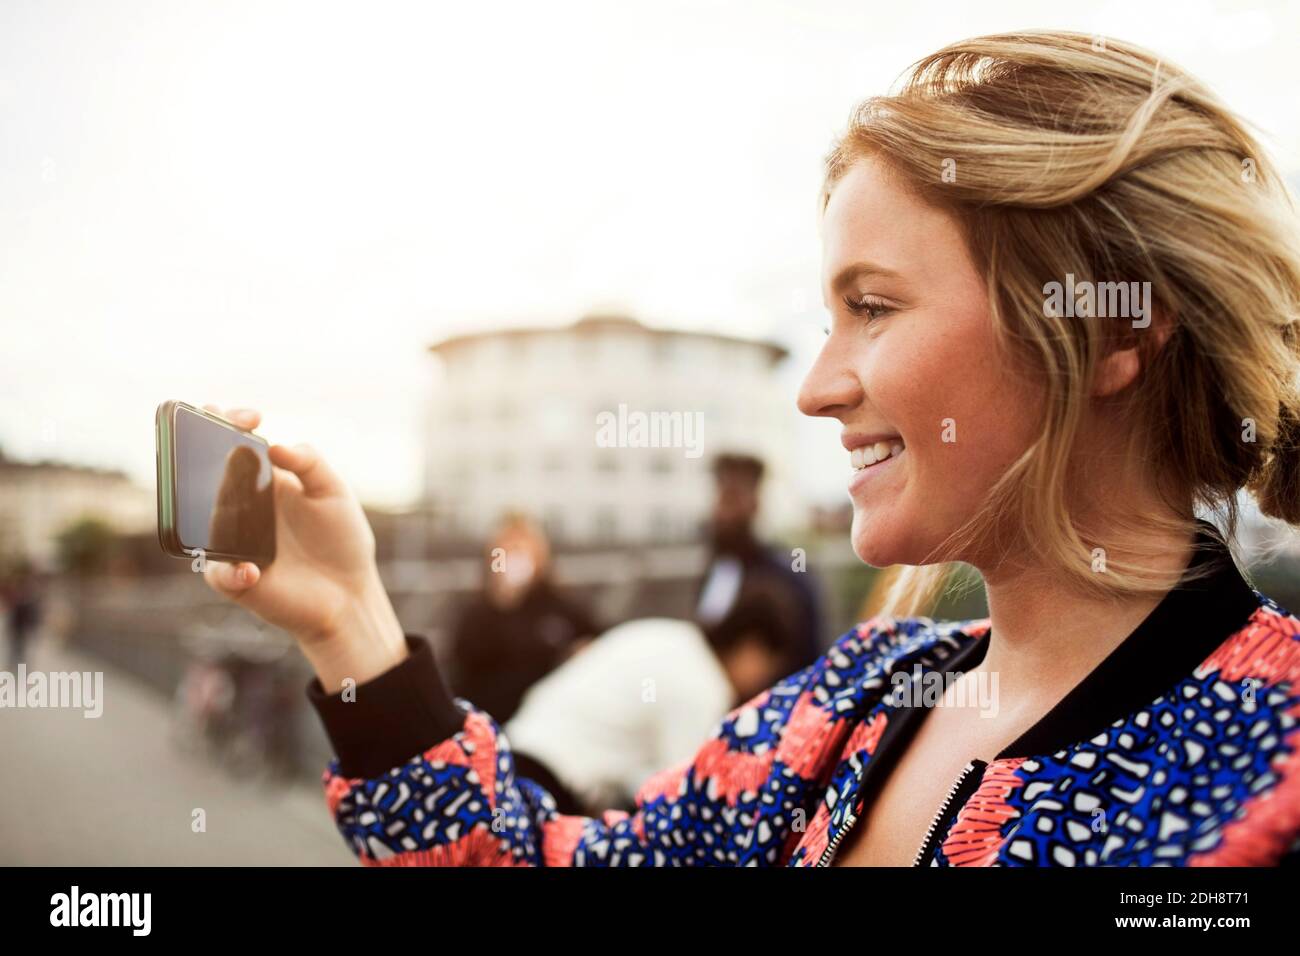 Vue latérale d'une femme heureuse photographiant depuis un smartphone Banque D'Images